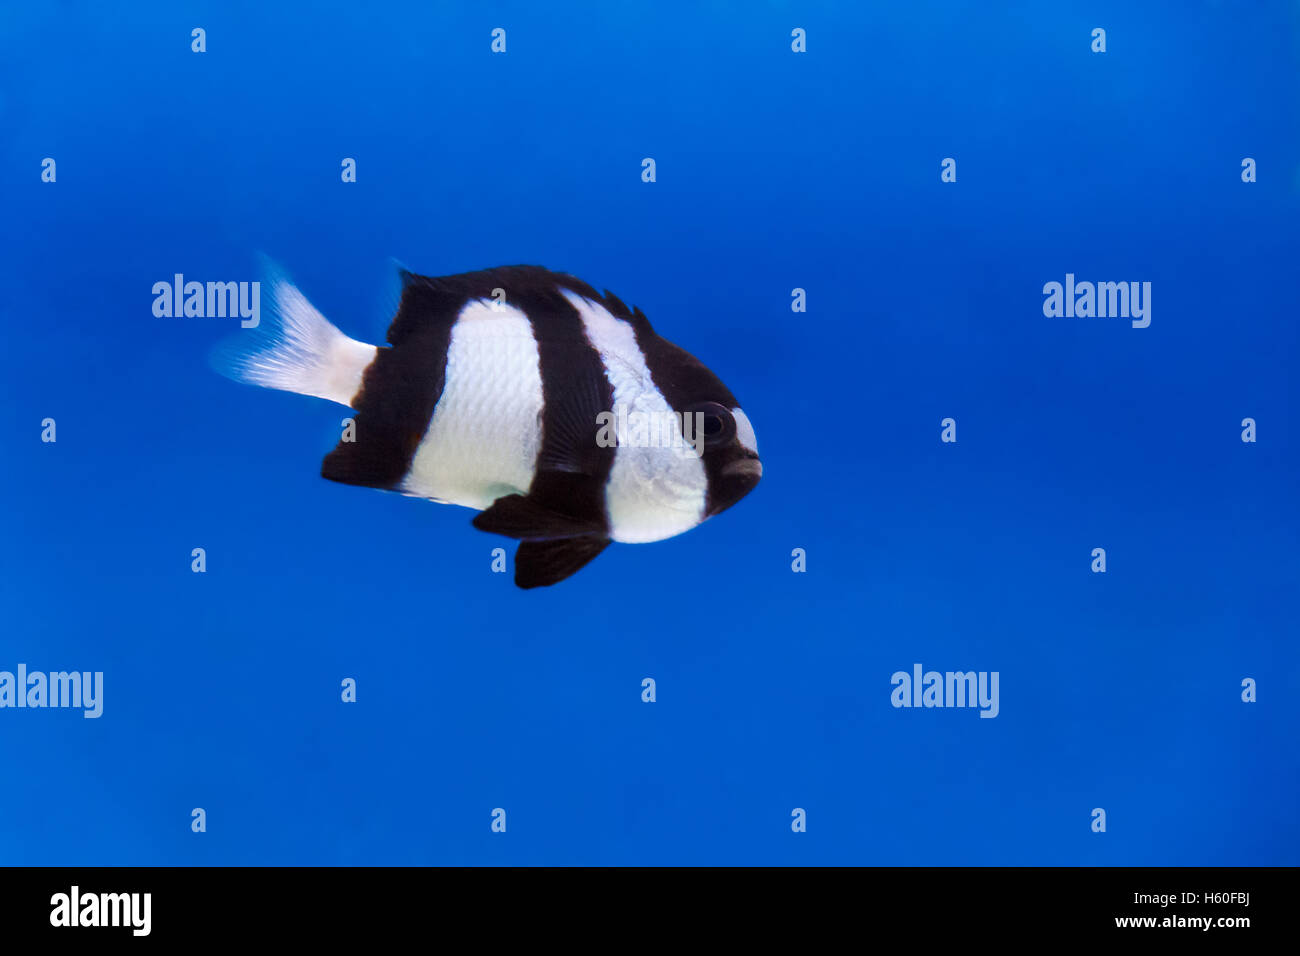 One black and white dascyllus trimaculatus fish in the aquarium Stock Photo